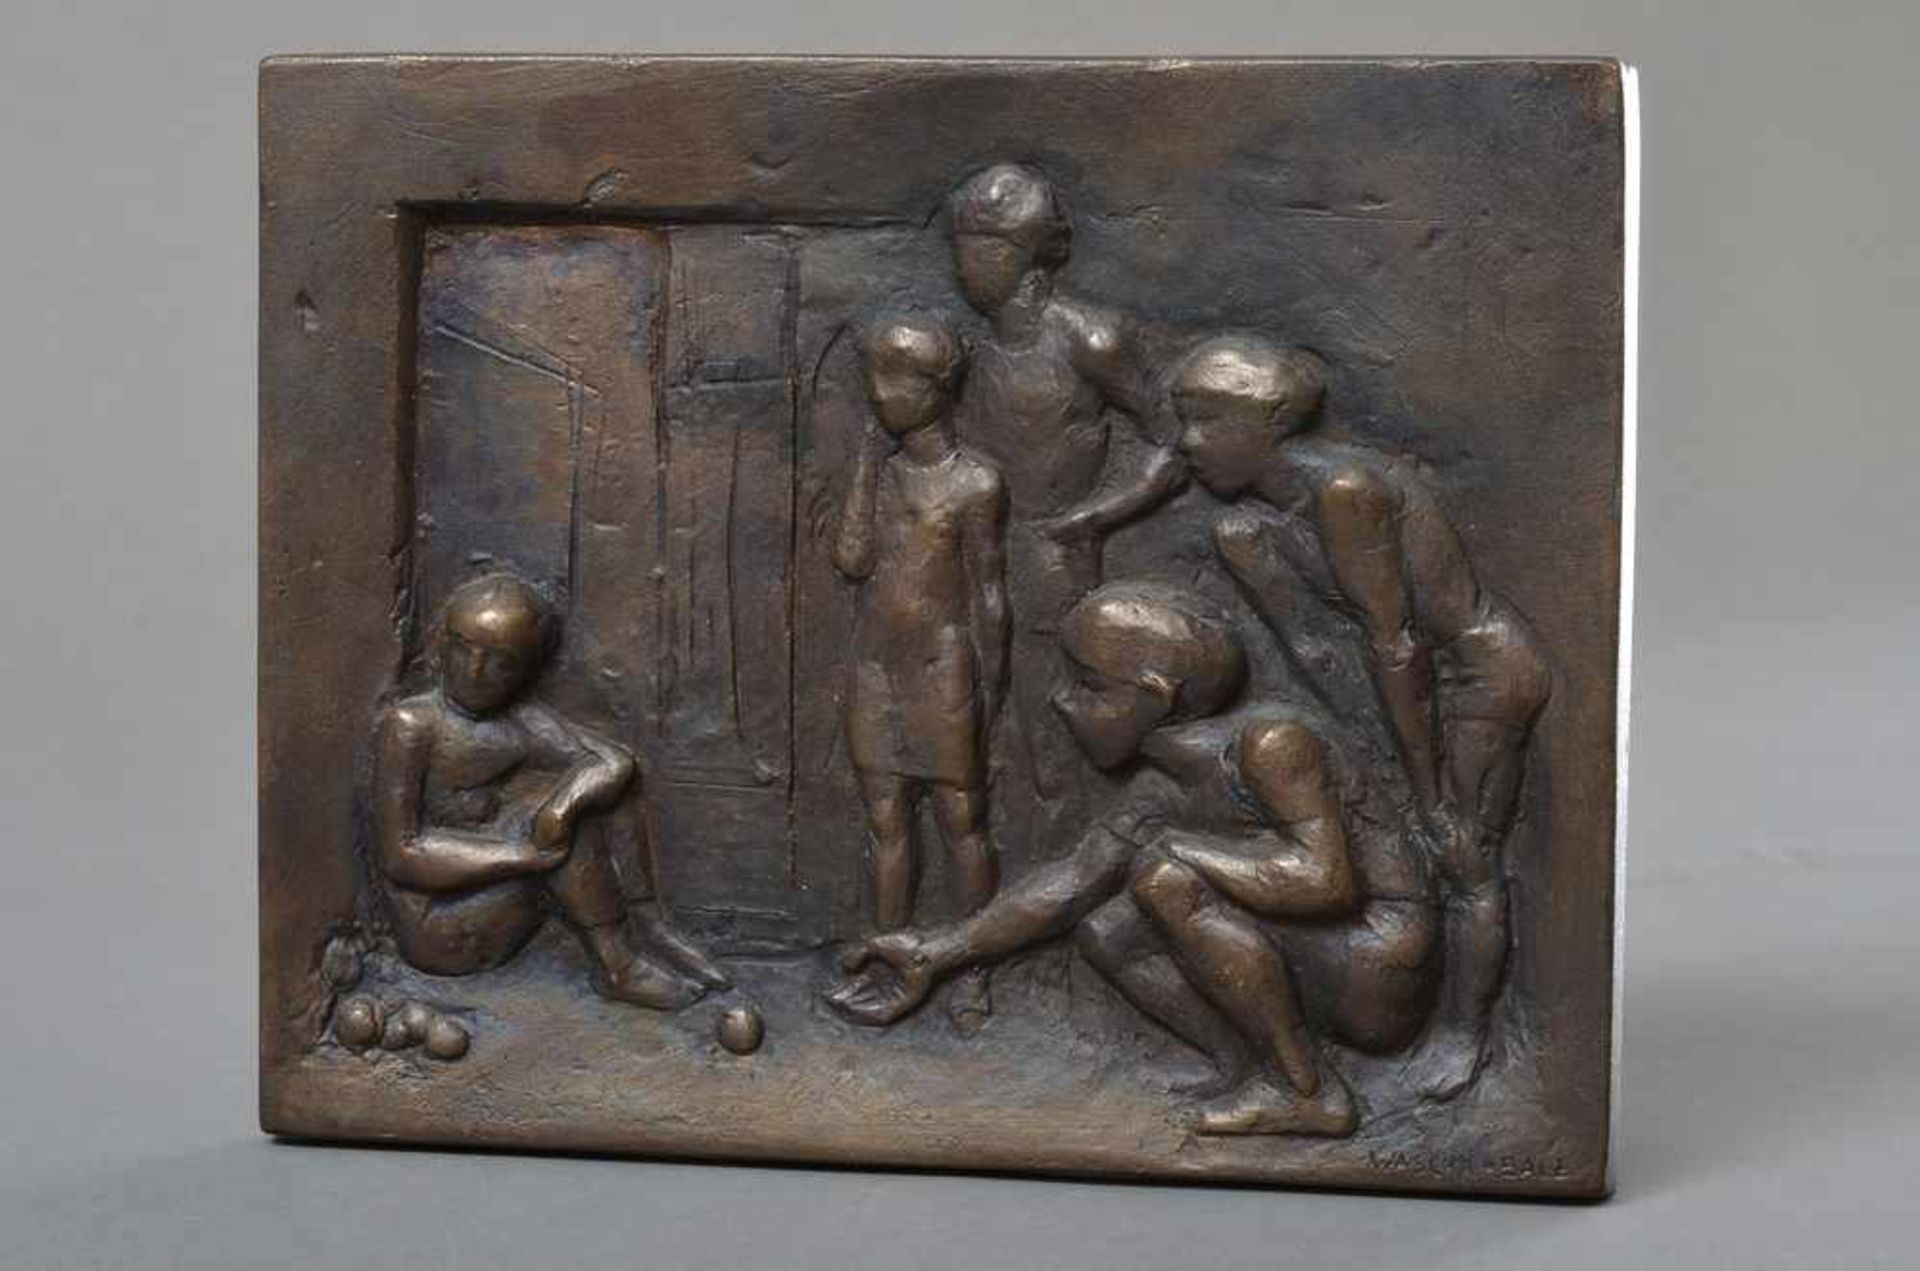 Waschk-Balz, Doris (*1942) "Kinder beim Murmelspiel", 1978, 203/300, Bronzerelief, 20,5x16cm